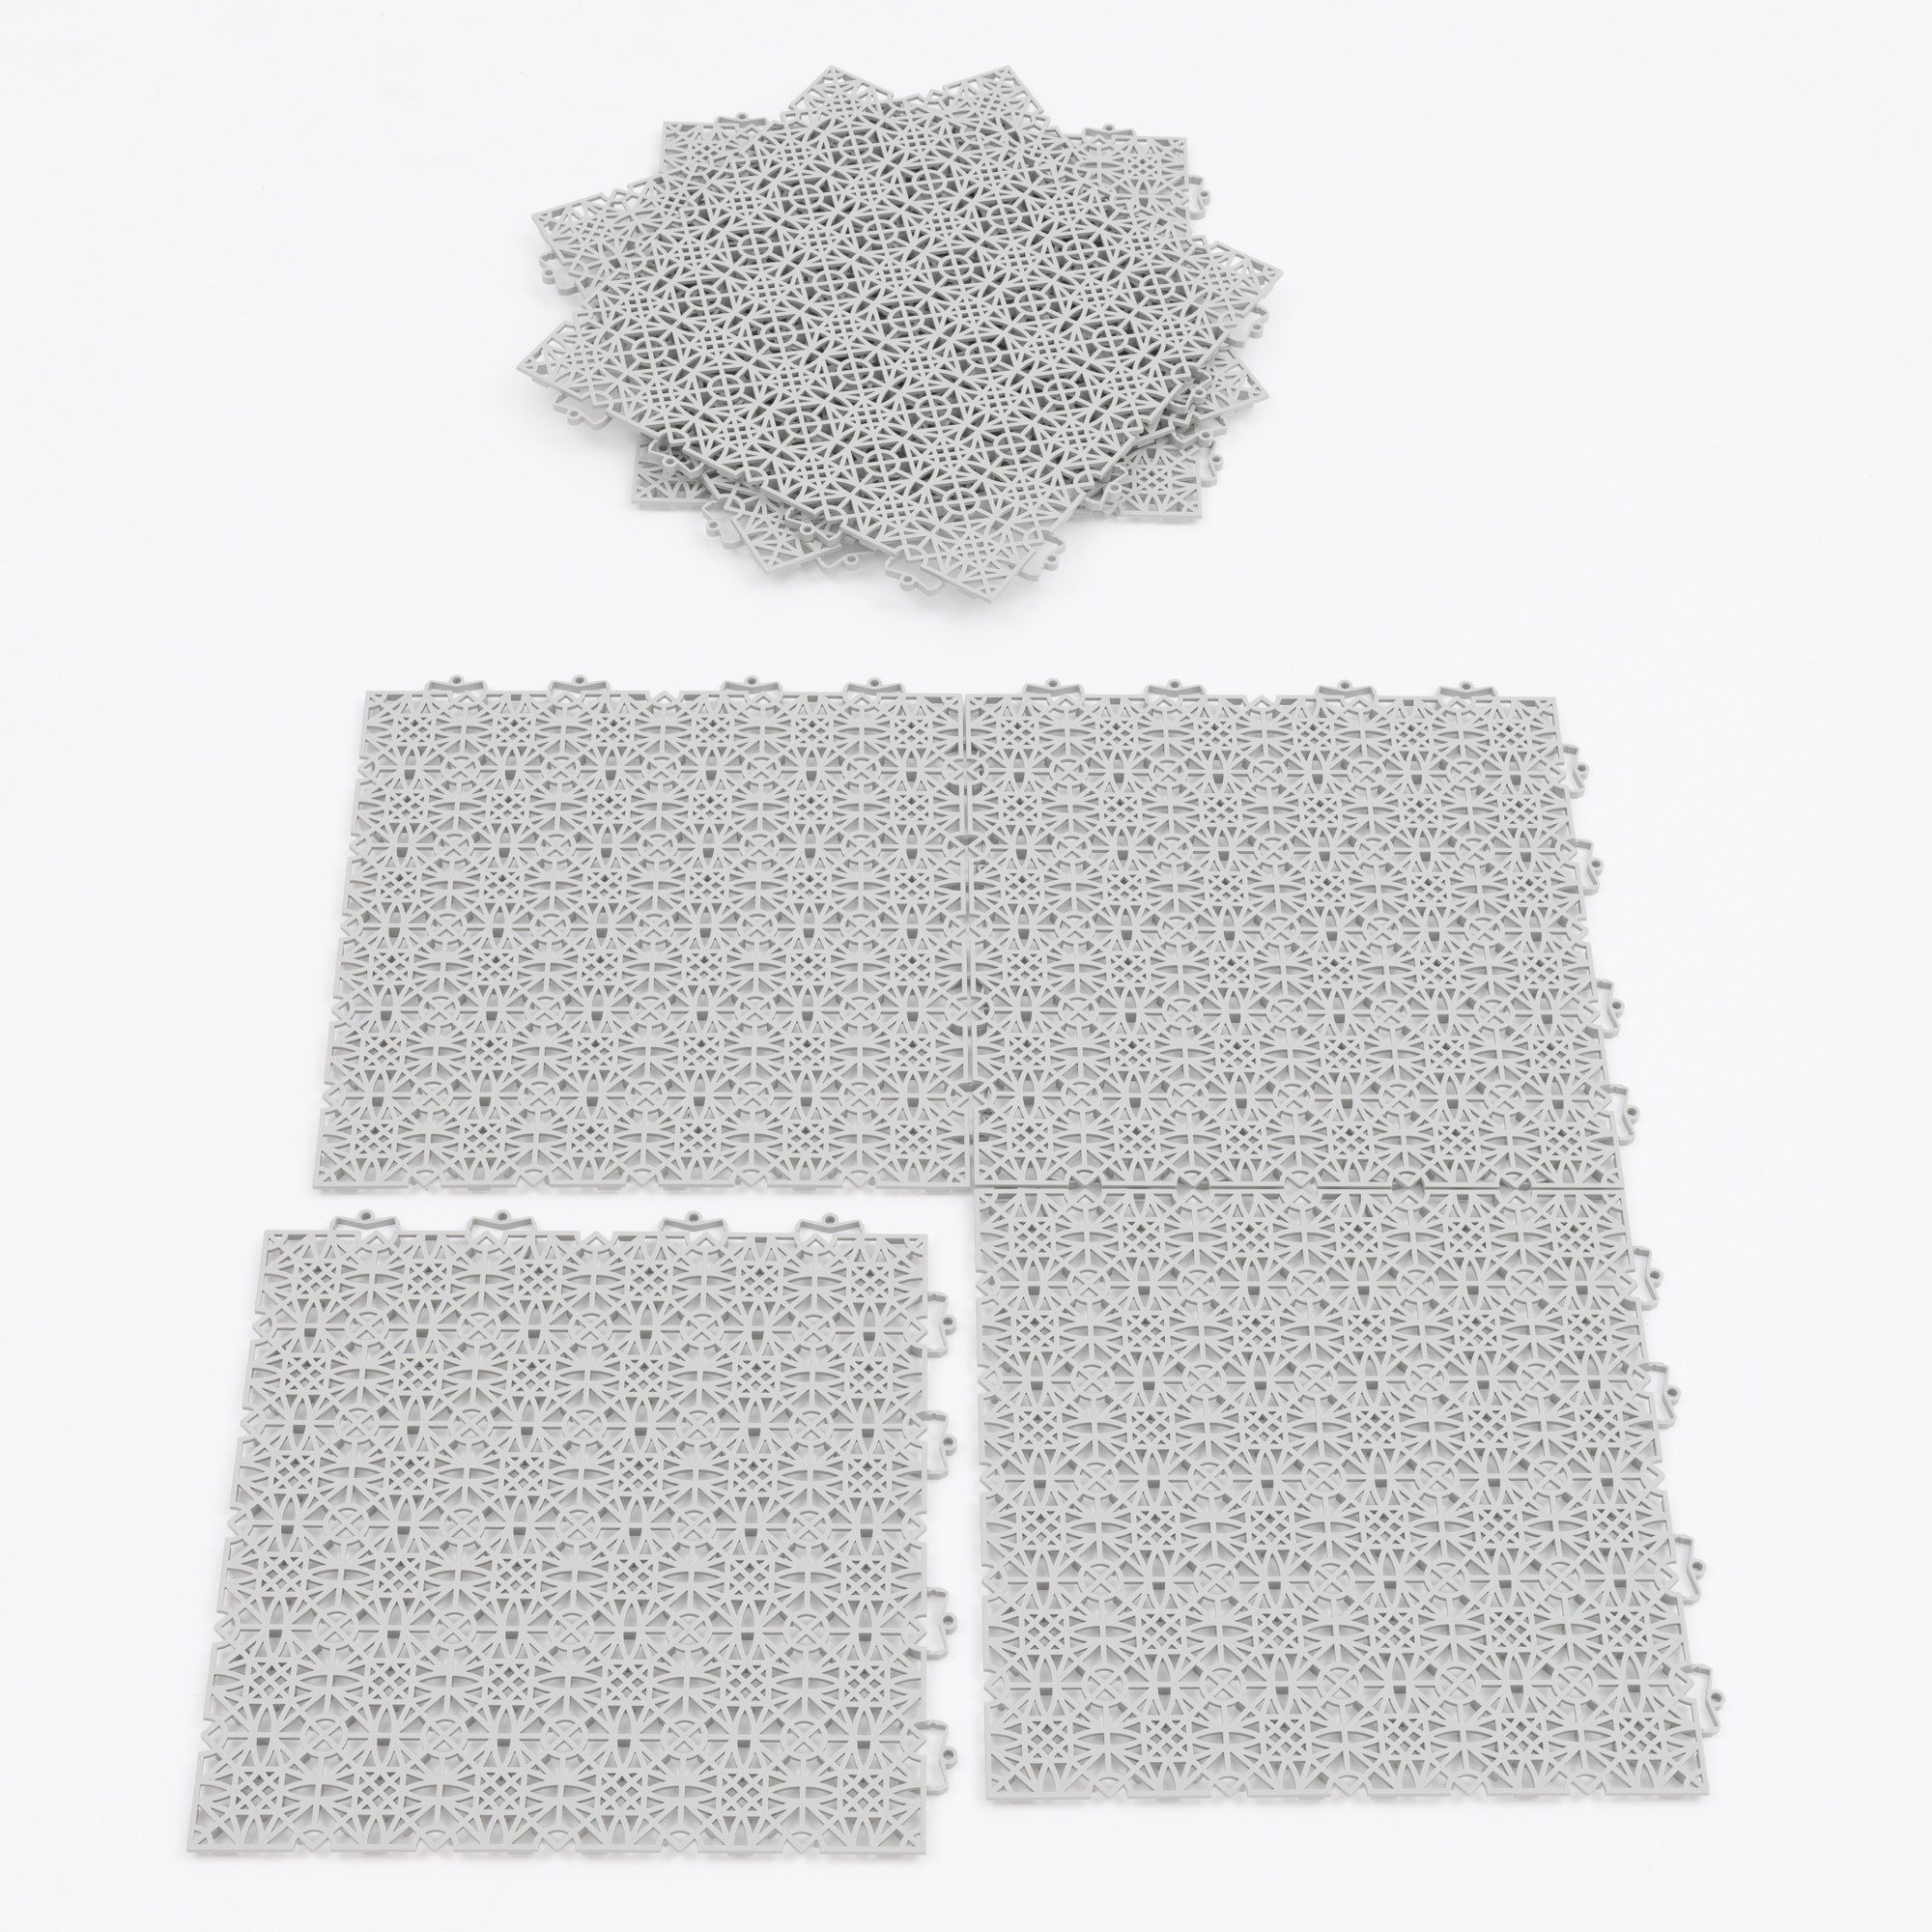 Polypropylen Klicksystem Bodenfliese Kunststoff Ibiza, Grau 38x38, Pergamon mit 100% Bodenfliese